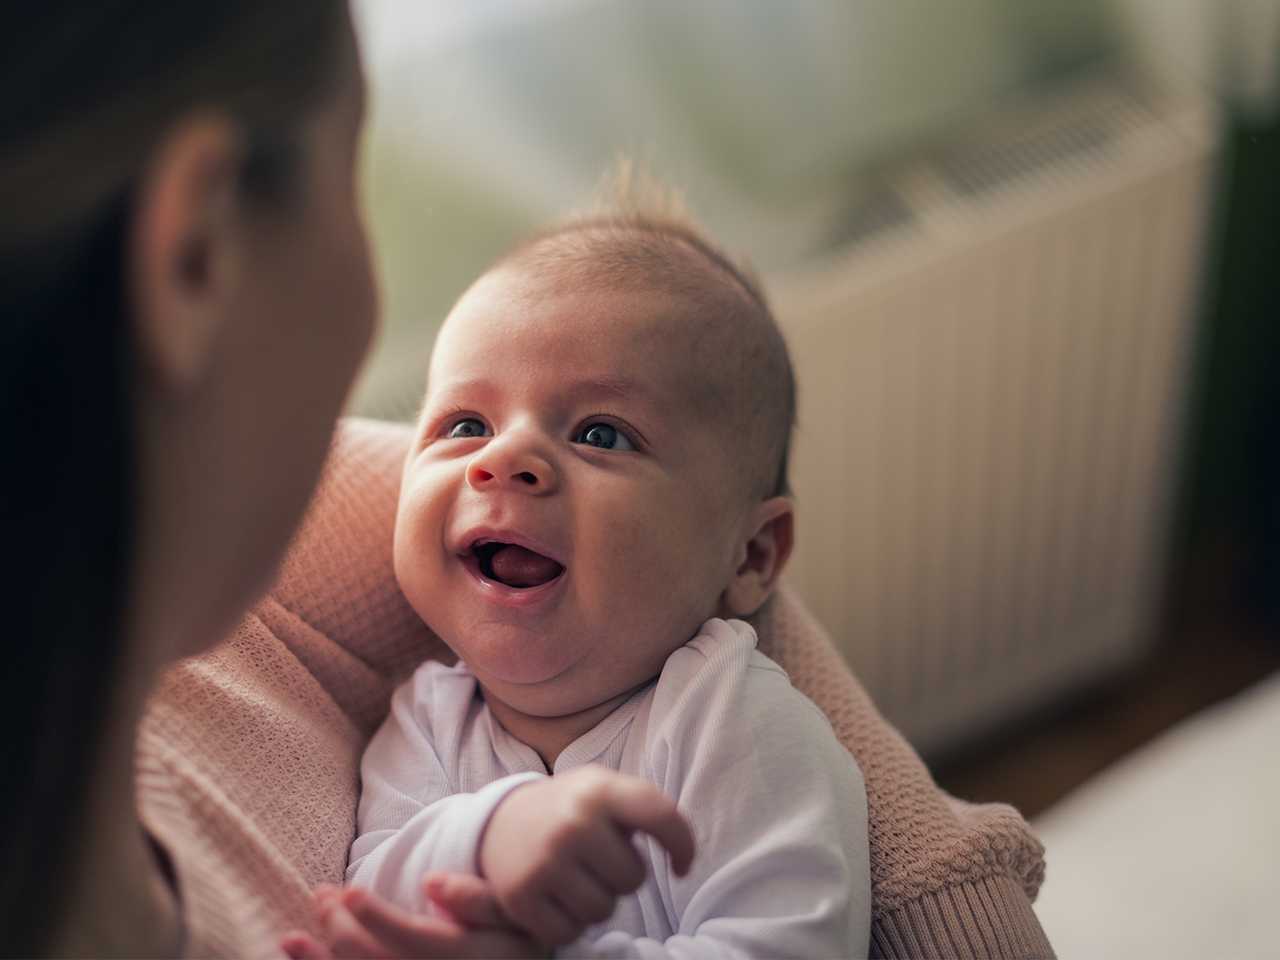 Когда ваш малыш начал осознанно вам улыбаться?